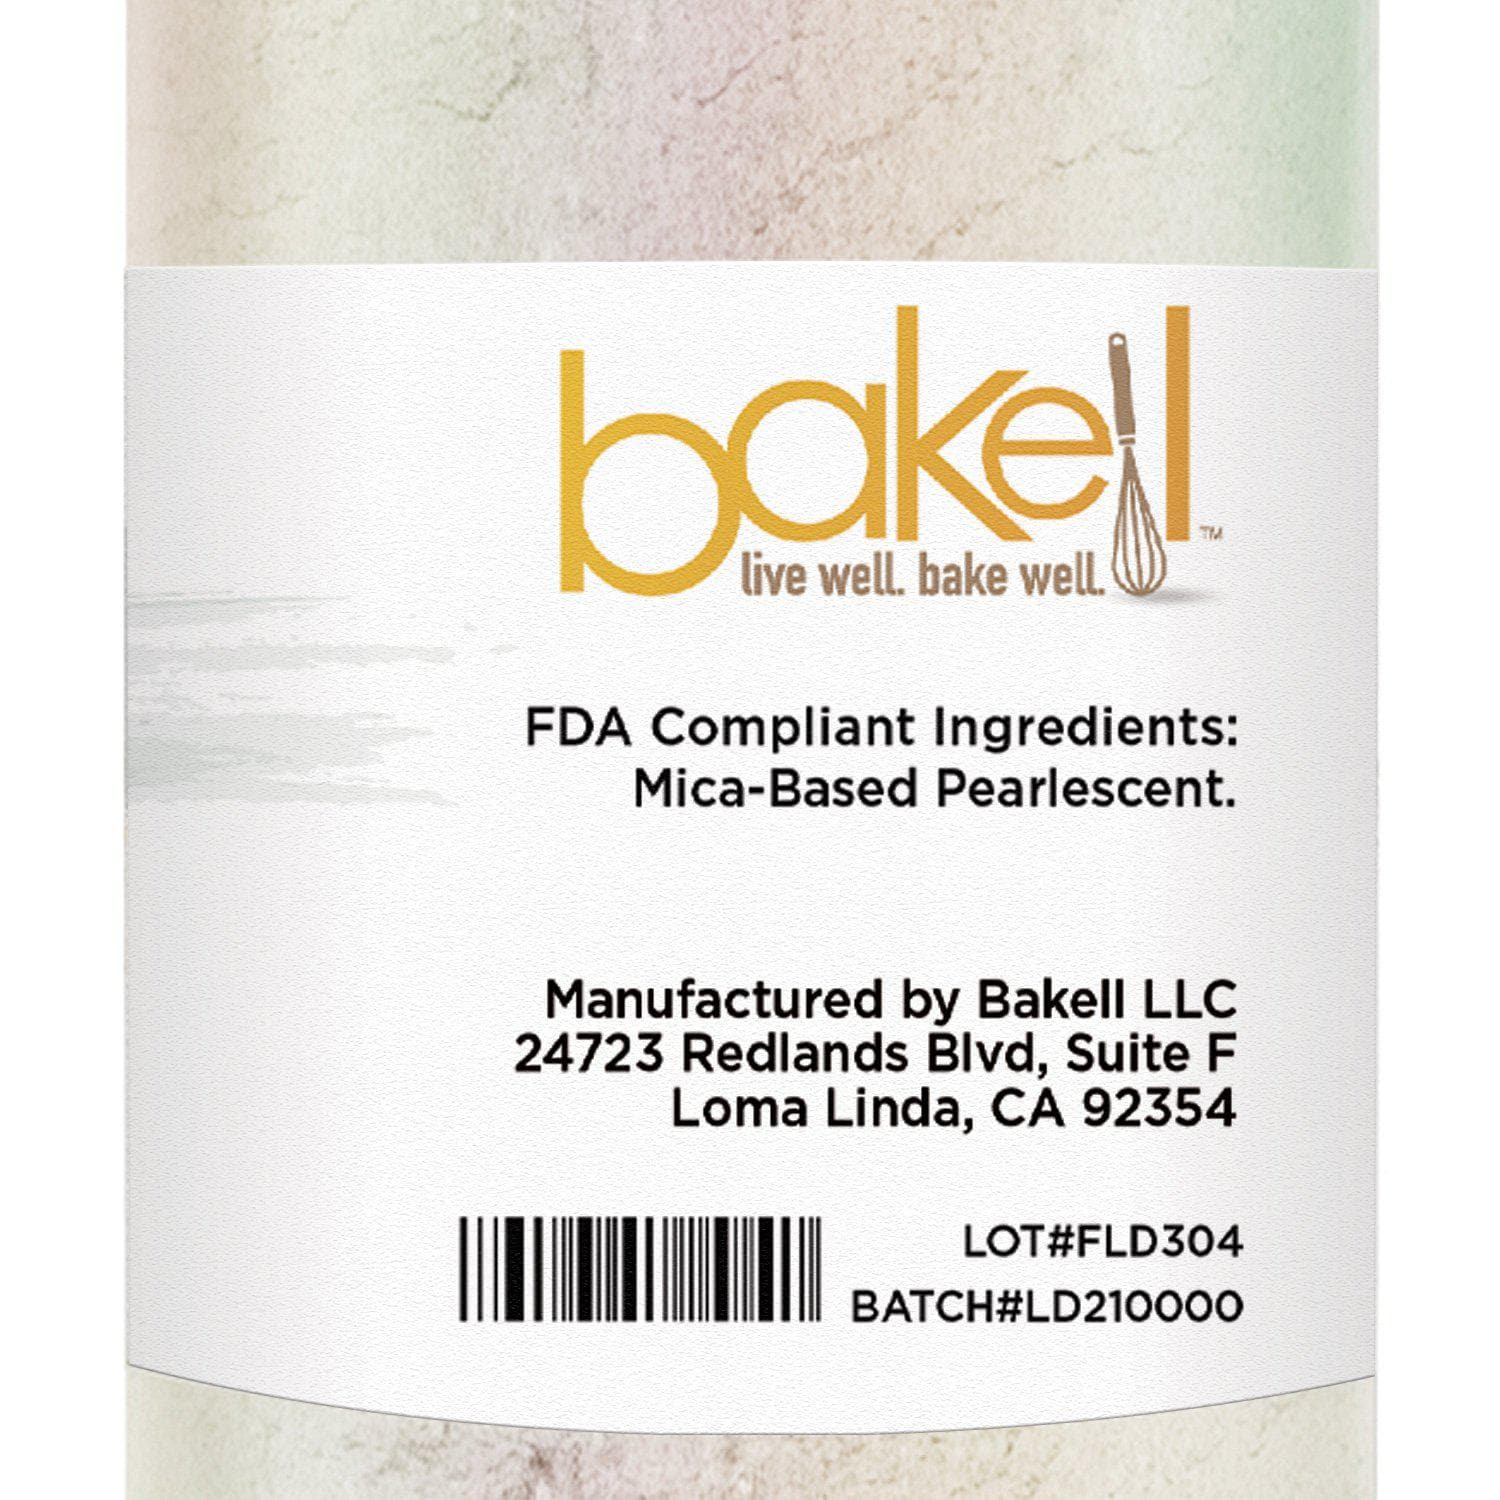 Green Iridescent Luster Dust | 100% Edible & Kosher Pareve | Wholesale | Bakell.com